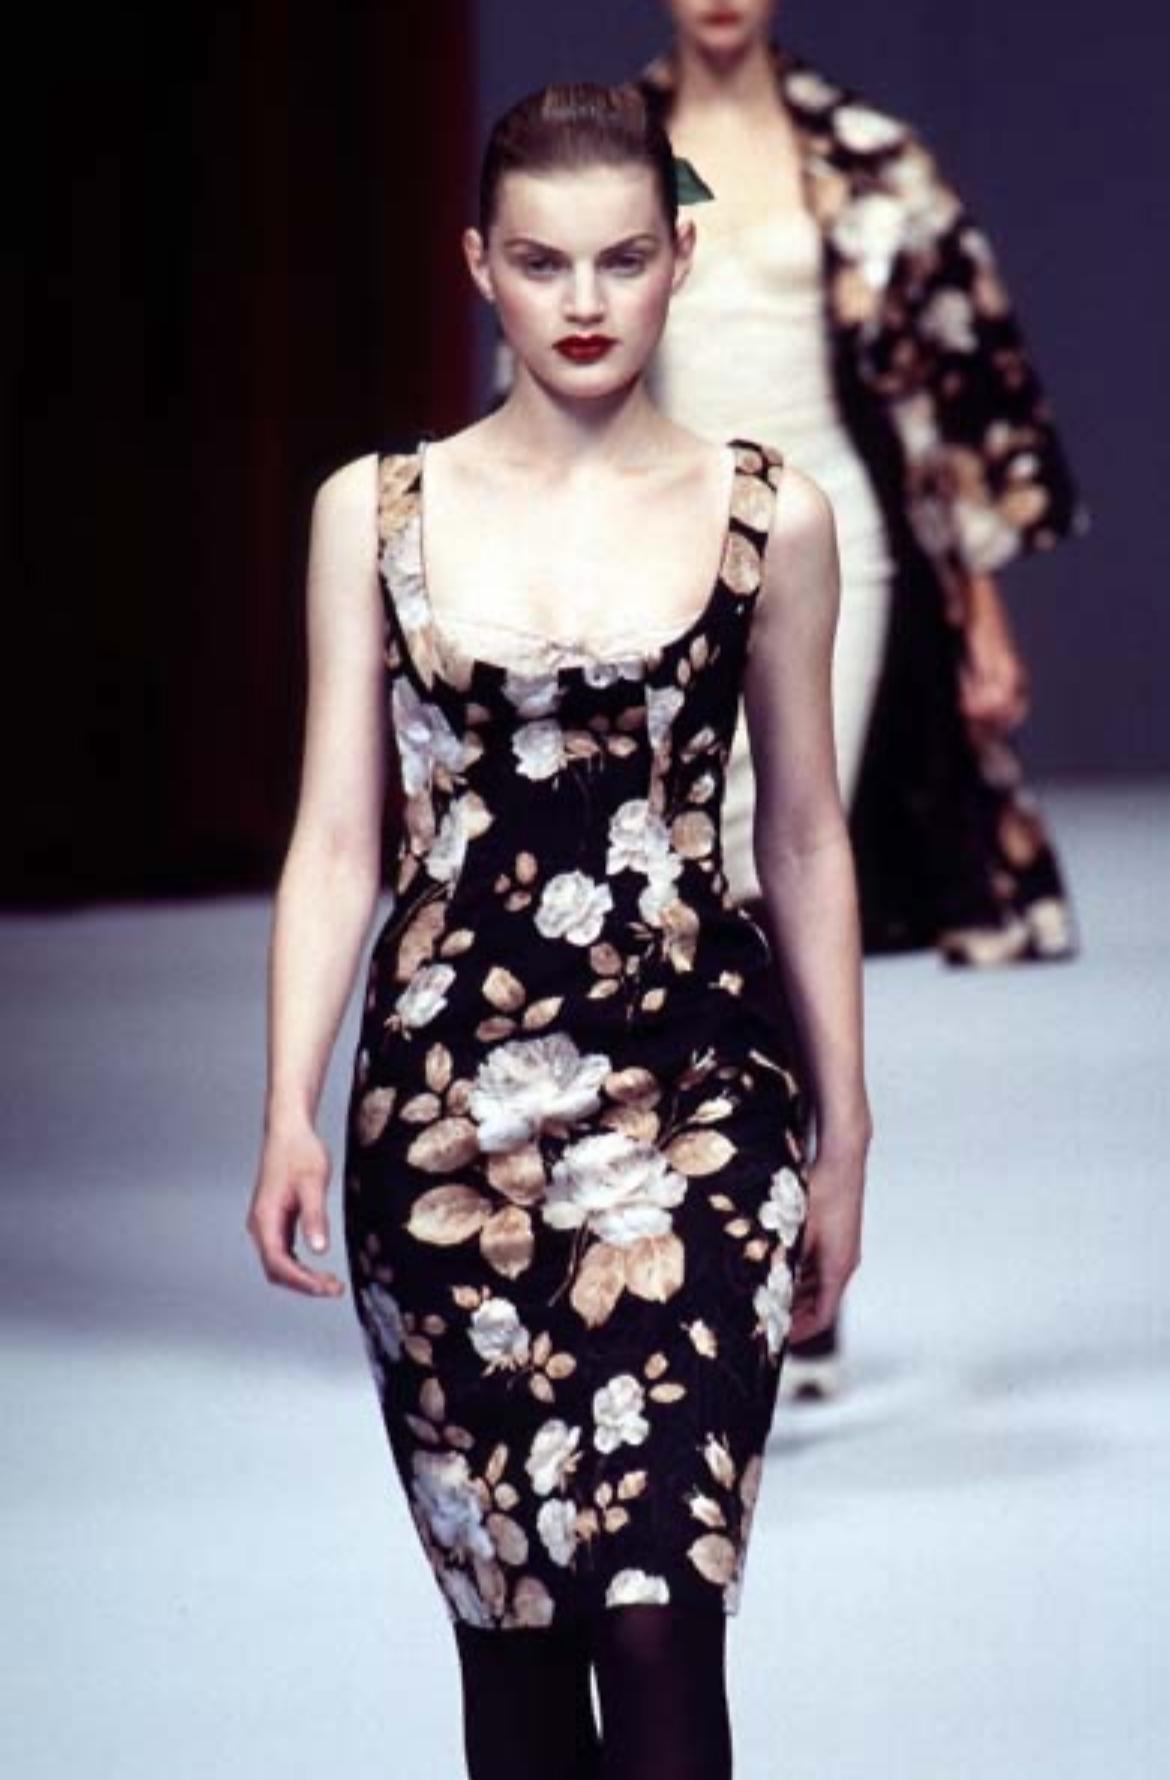 Wir präsentieren einen hellbraunen und schwarzen Rock mit Blumenmuster von Dolce & Gabbana aus der Herbst/Winter 1996 Kollektion. Dieses markante Muster feierte sein Debüt auf dem Laufsteg der Saison. Dieser oberhalb des Knies geschnittene Rock ist